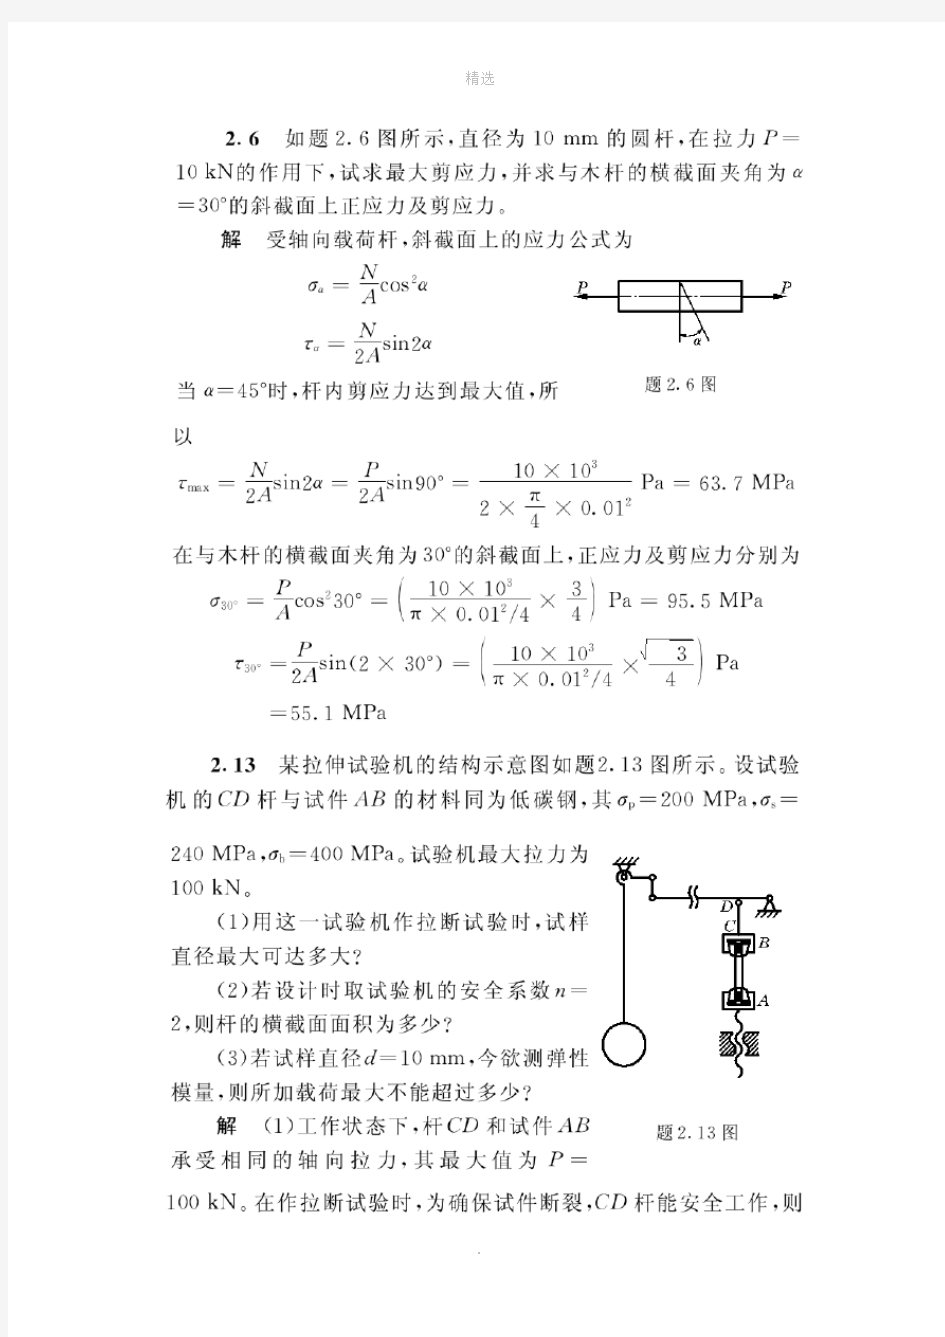 材料力学习题答案-刘文鸿-第四版